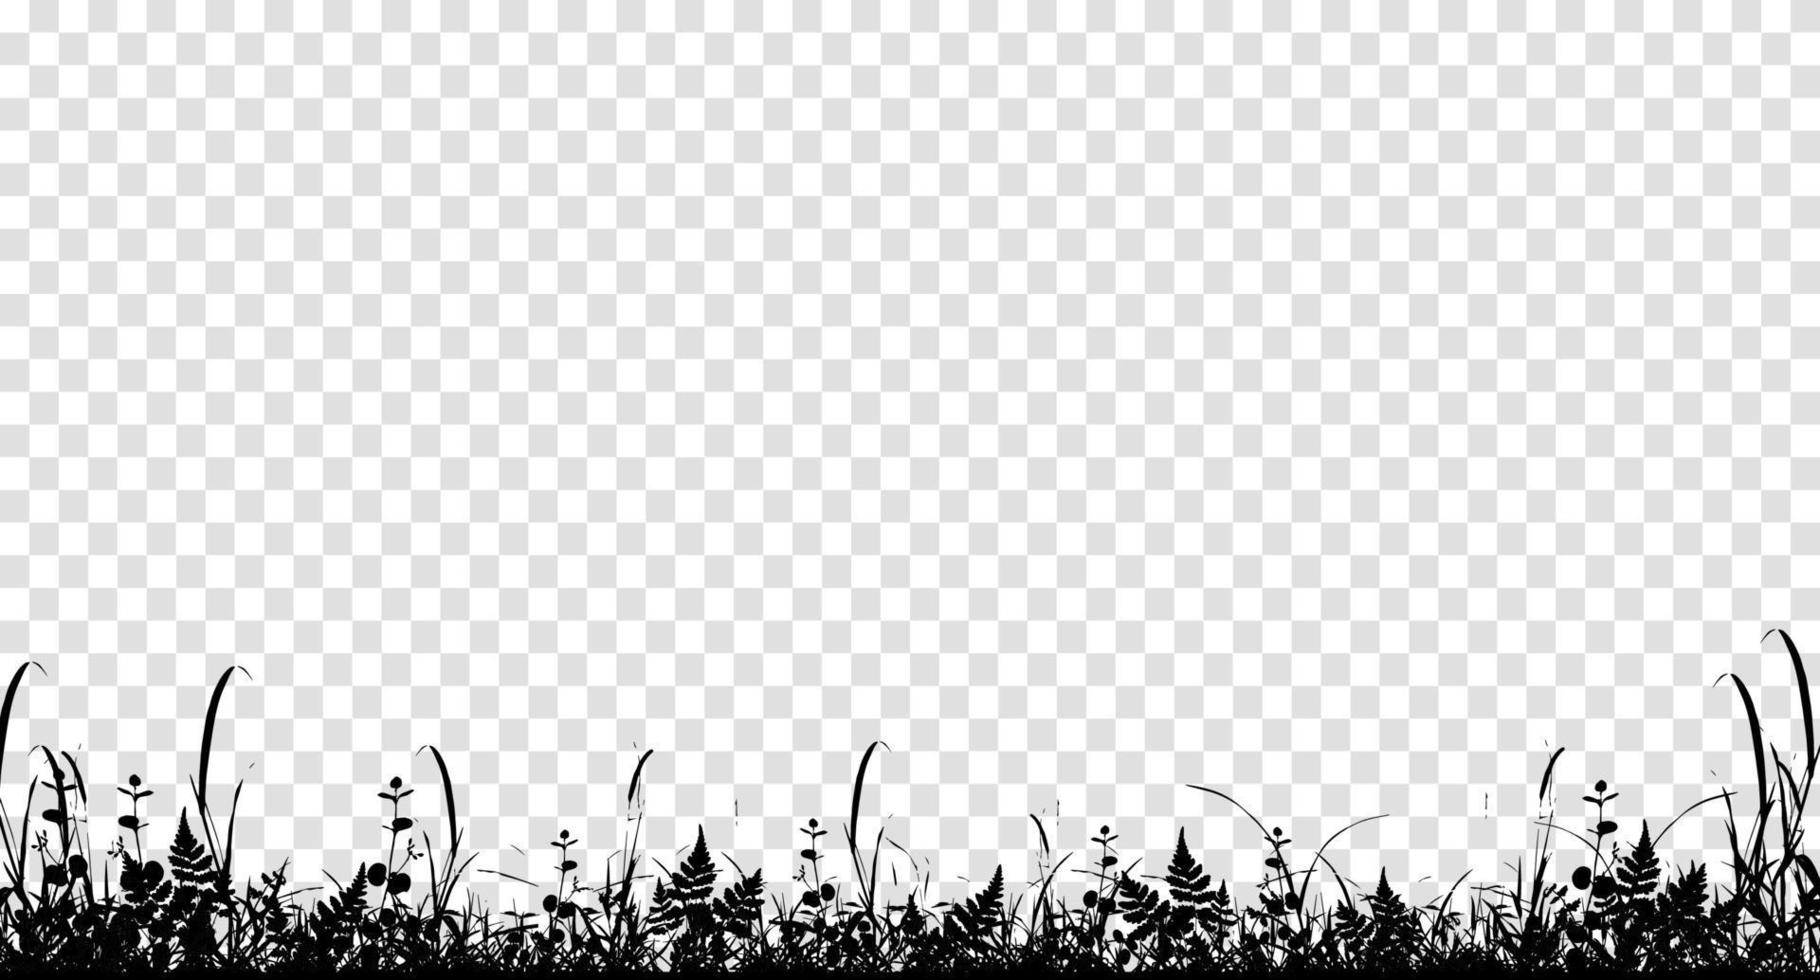 silueta de hierba natural como fondo vector